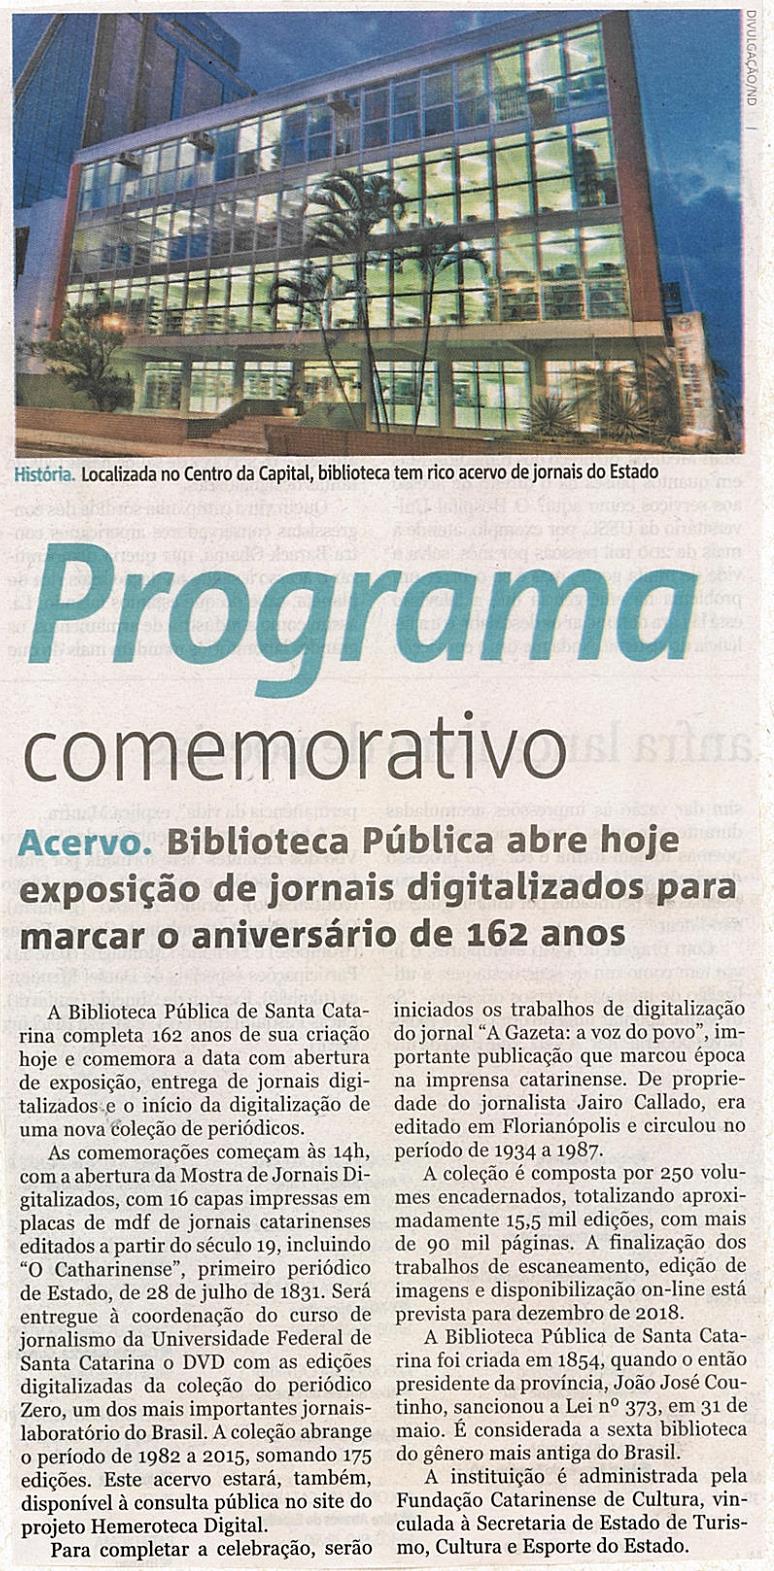 Notícias do Dia Plural Programa comemorativo Programa comemorativo / Biblioteca Pública de Santa Catarina / Mostra de Jornais Digitalizados / o Catharinense / Universidade Federal de Santa Catarina